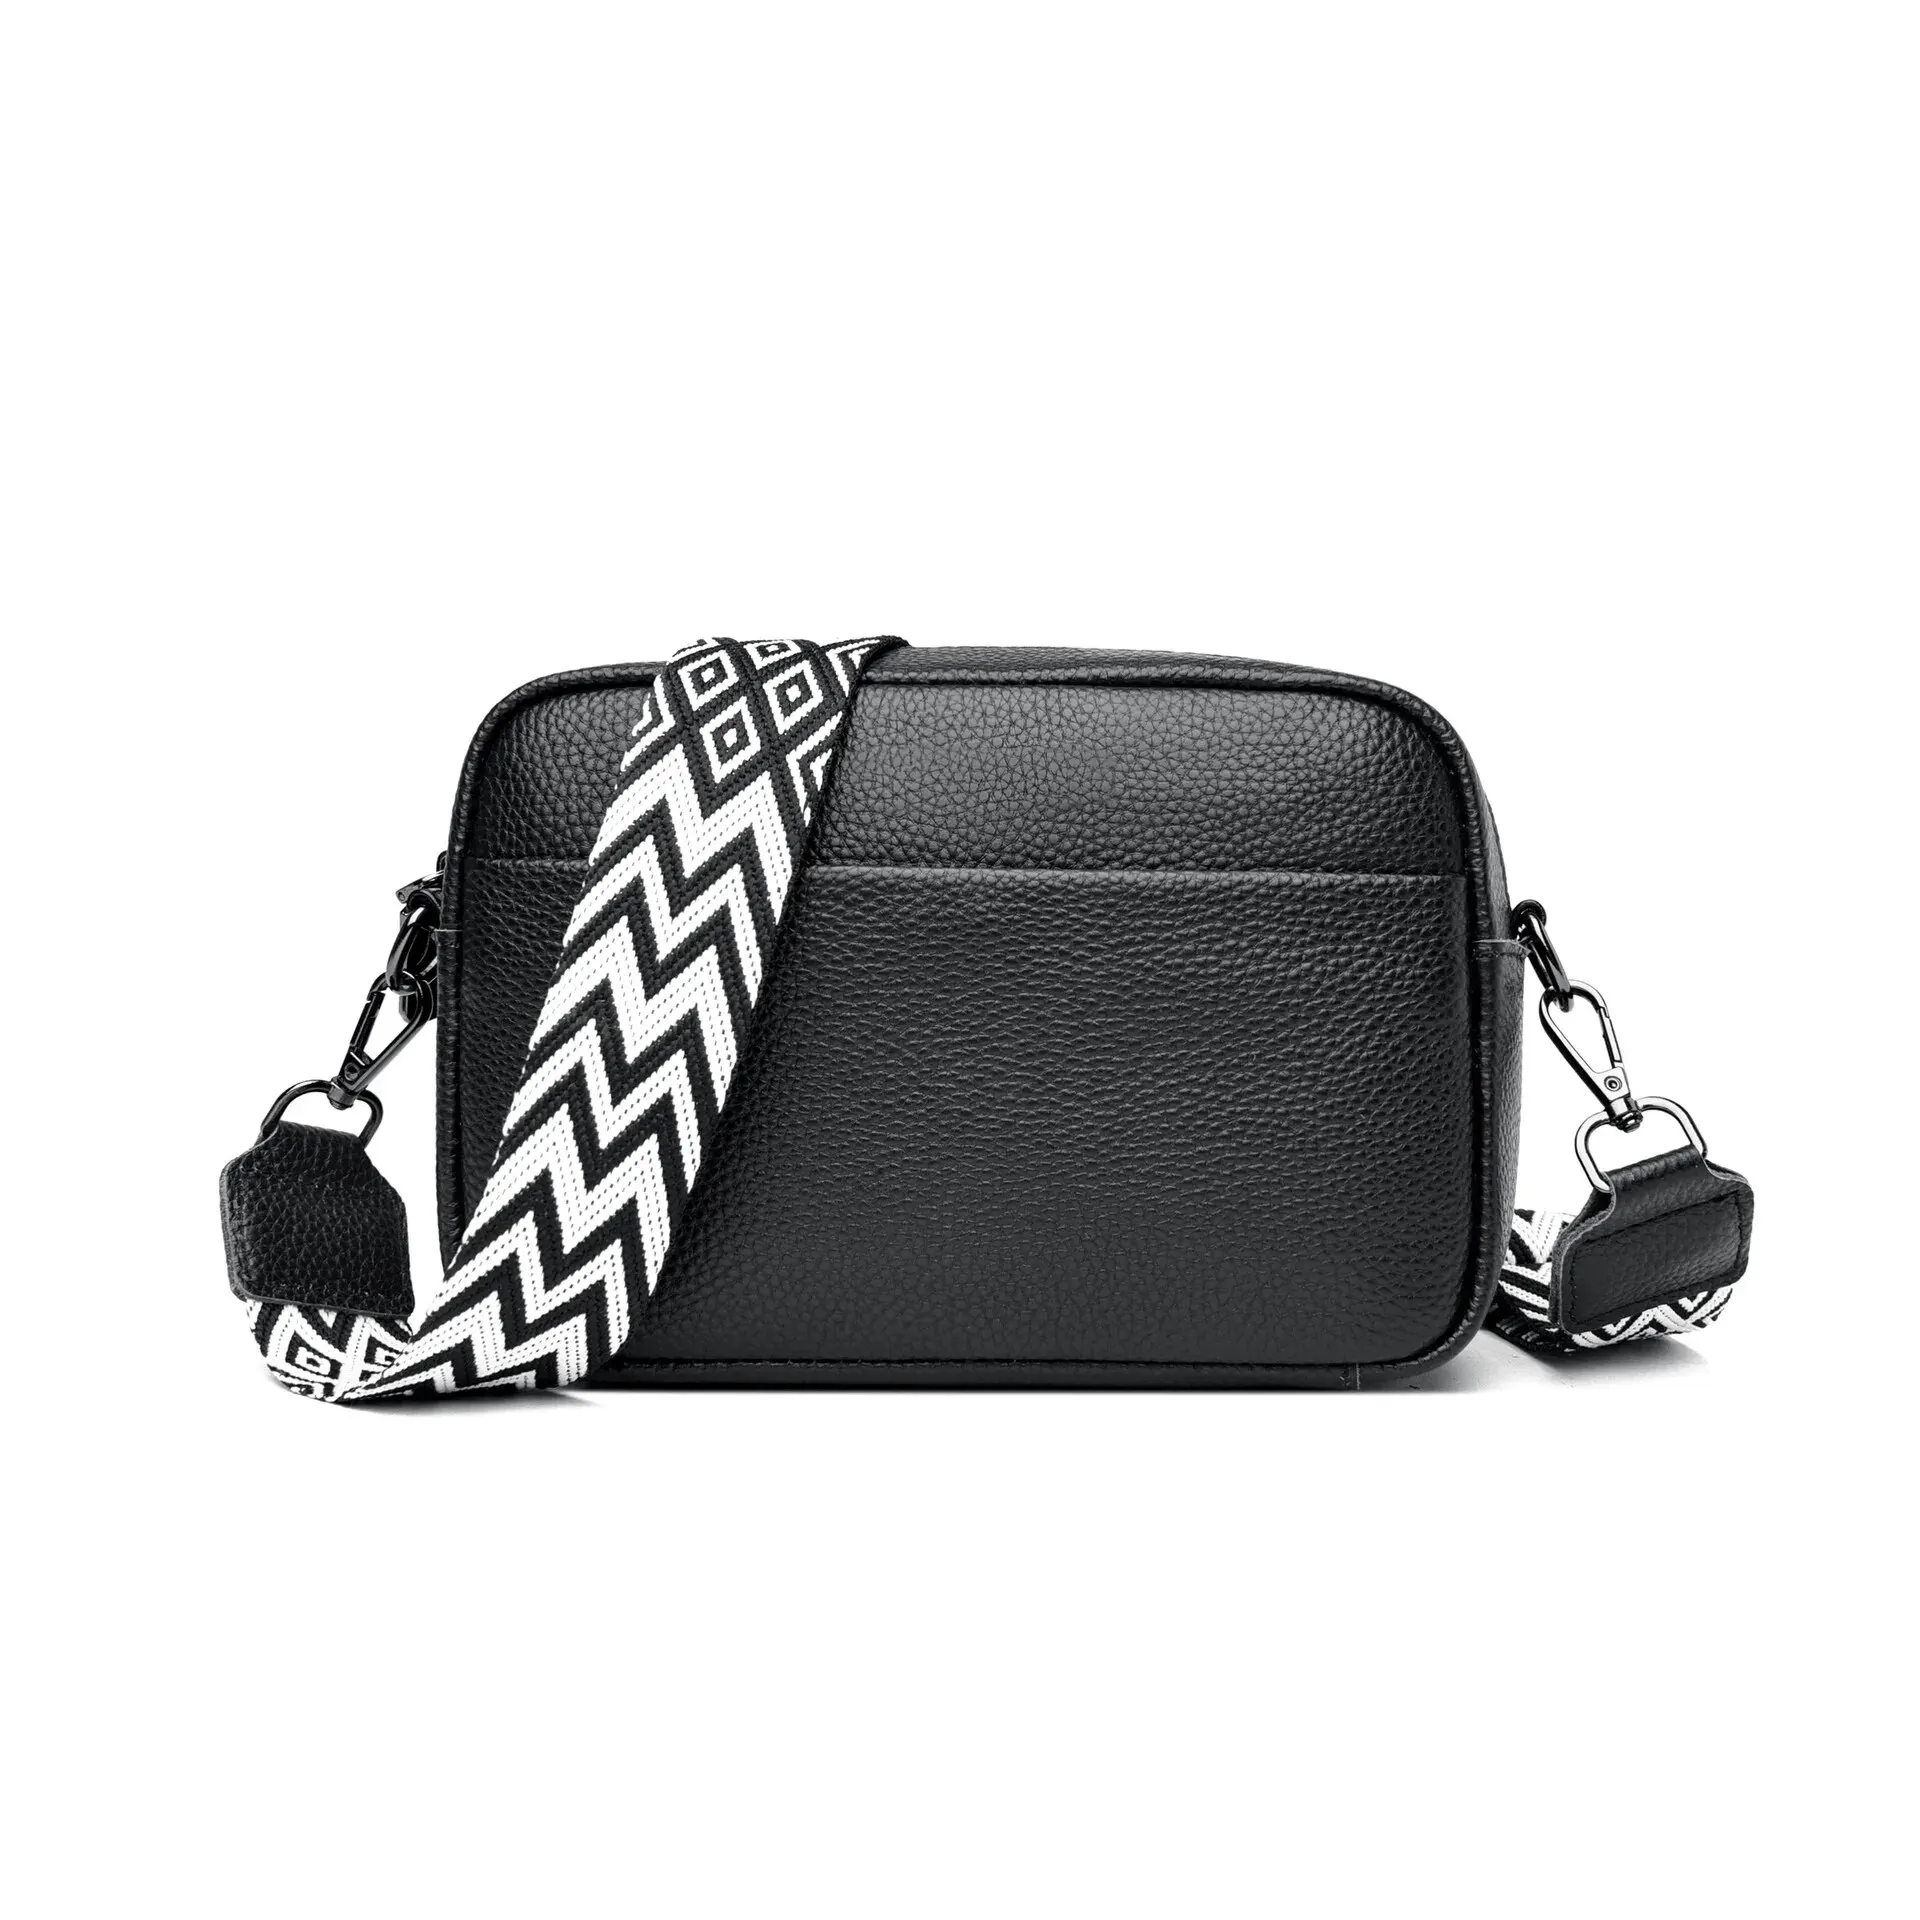 Genuine Leather Handbag For Women Crossbody Bag For Daily Commute Multi ... - $51.79